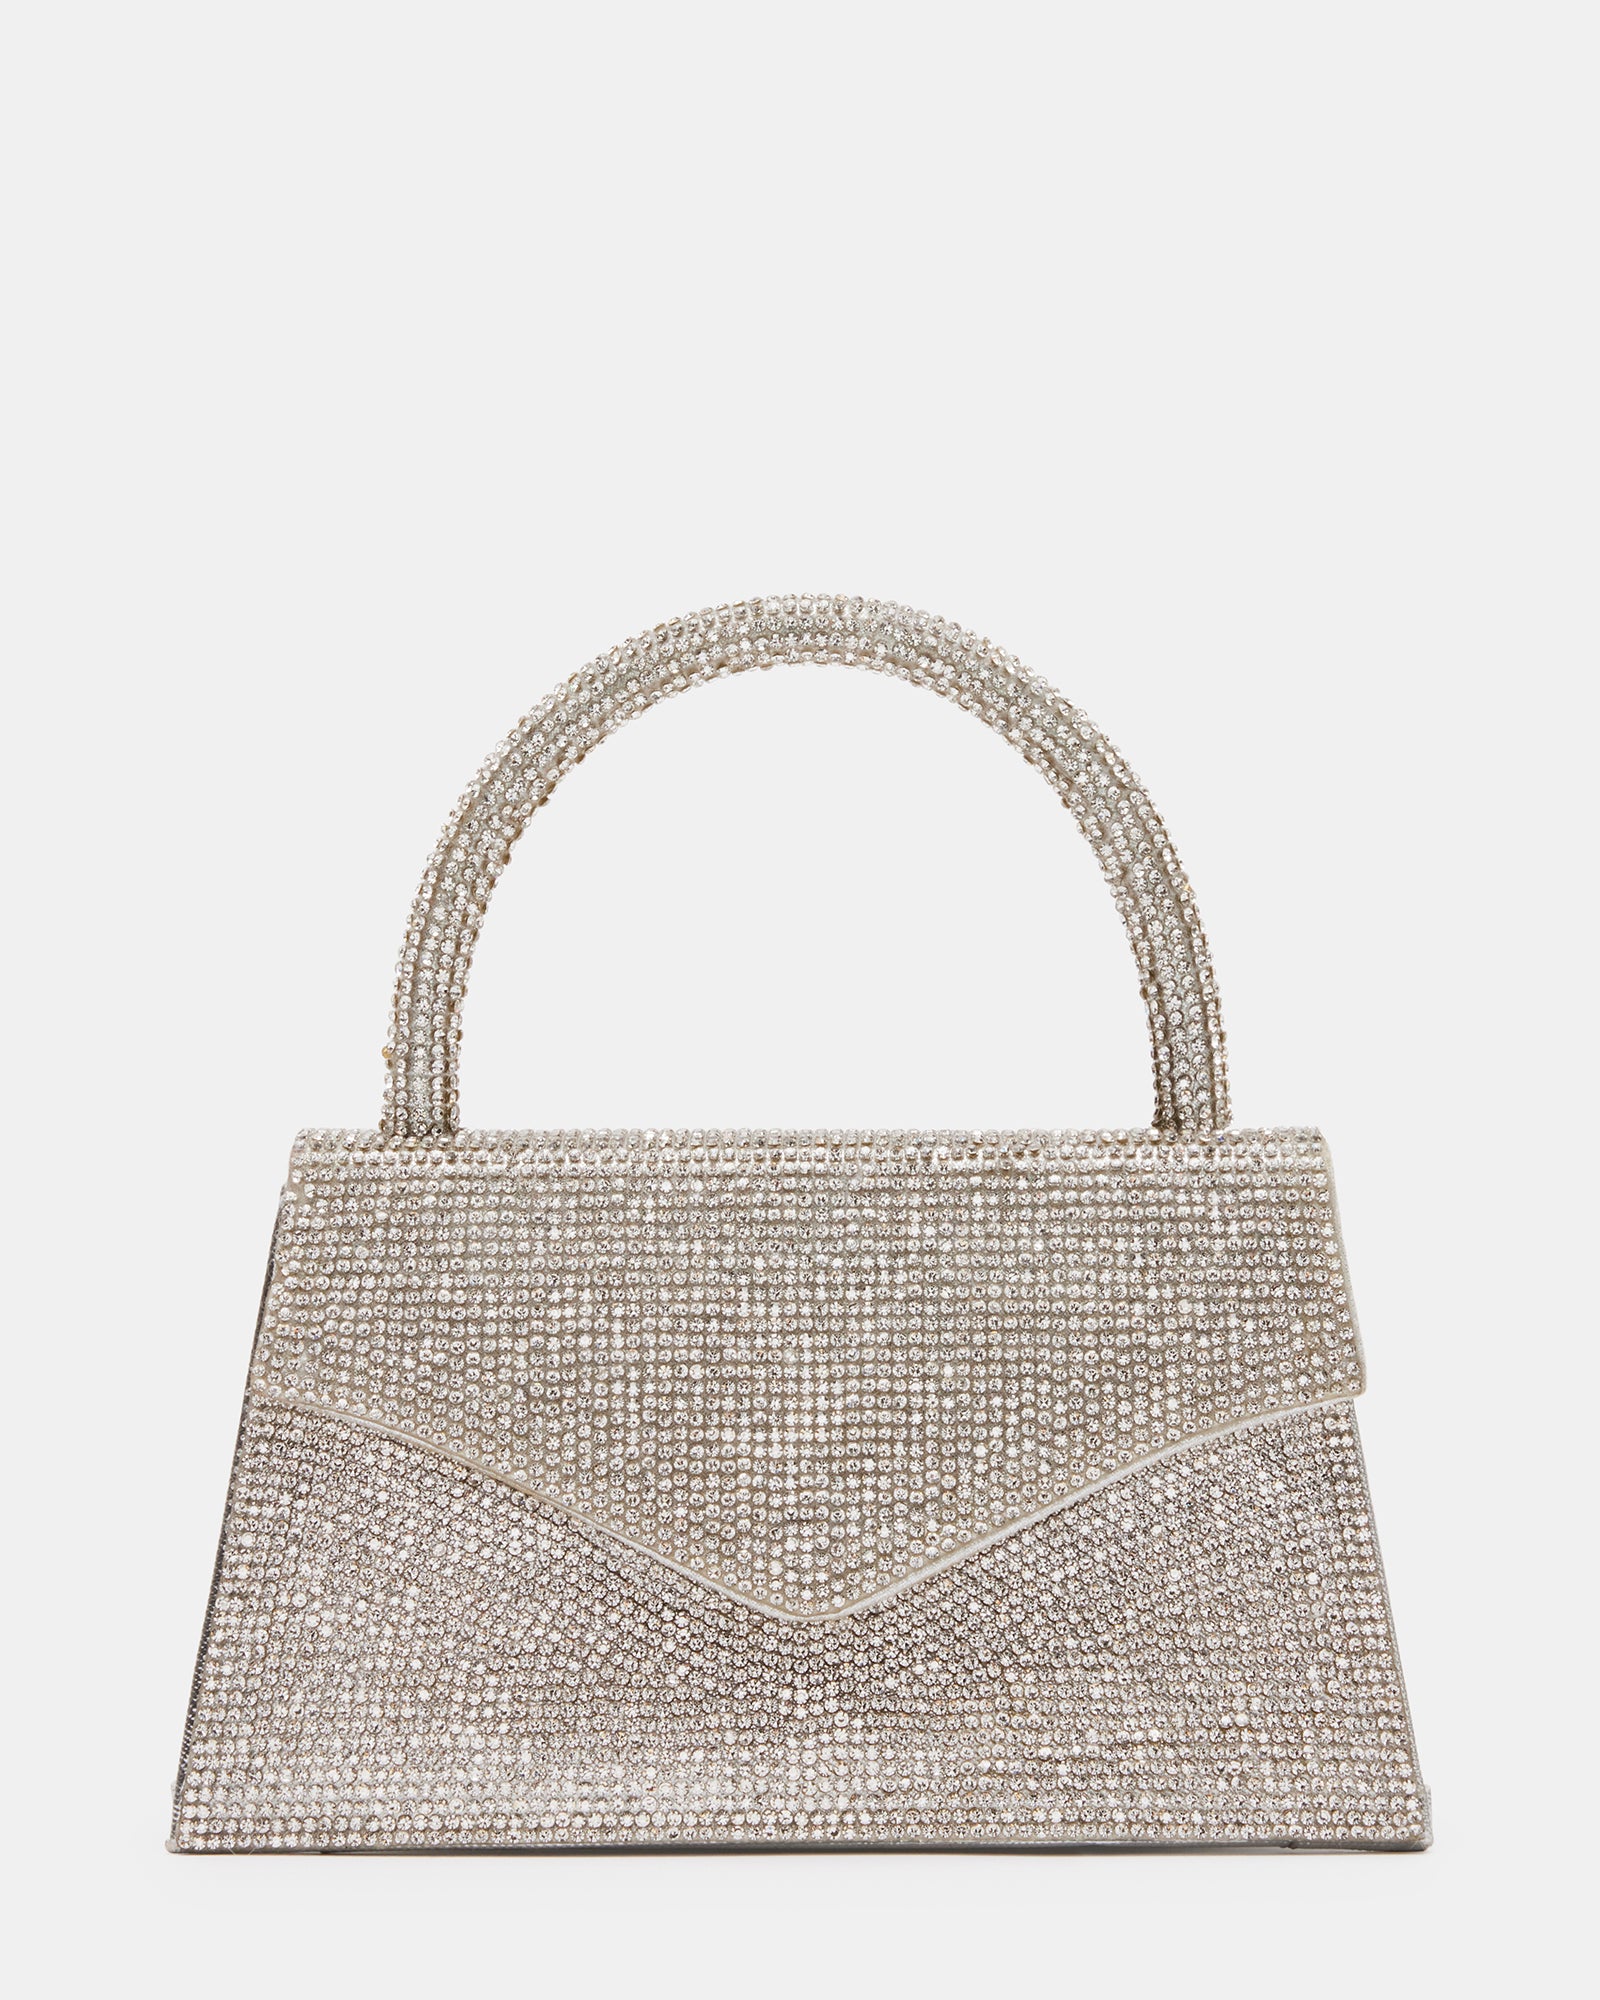 Steve Madden Knoxx Woven Paris Tote Bag | Dillard's